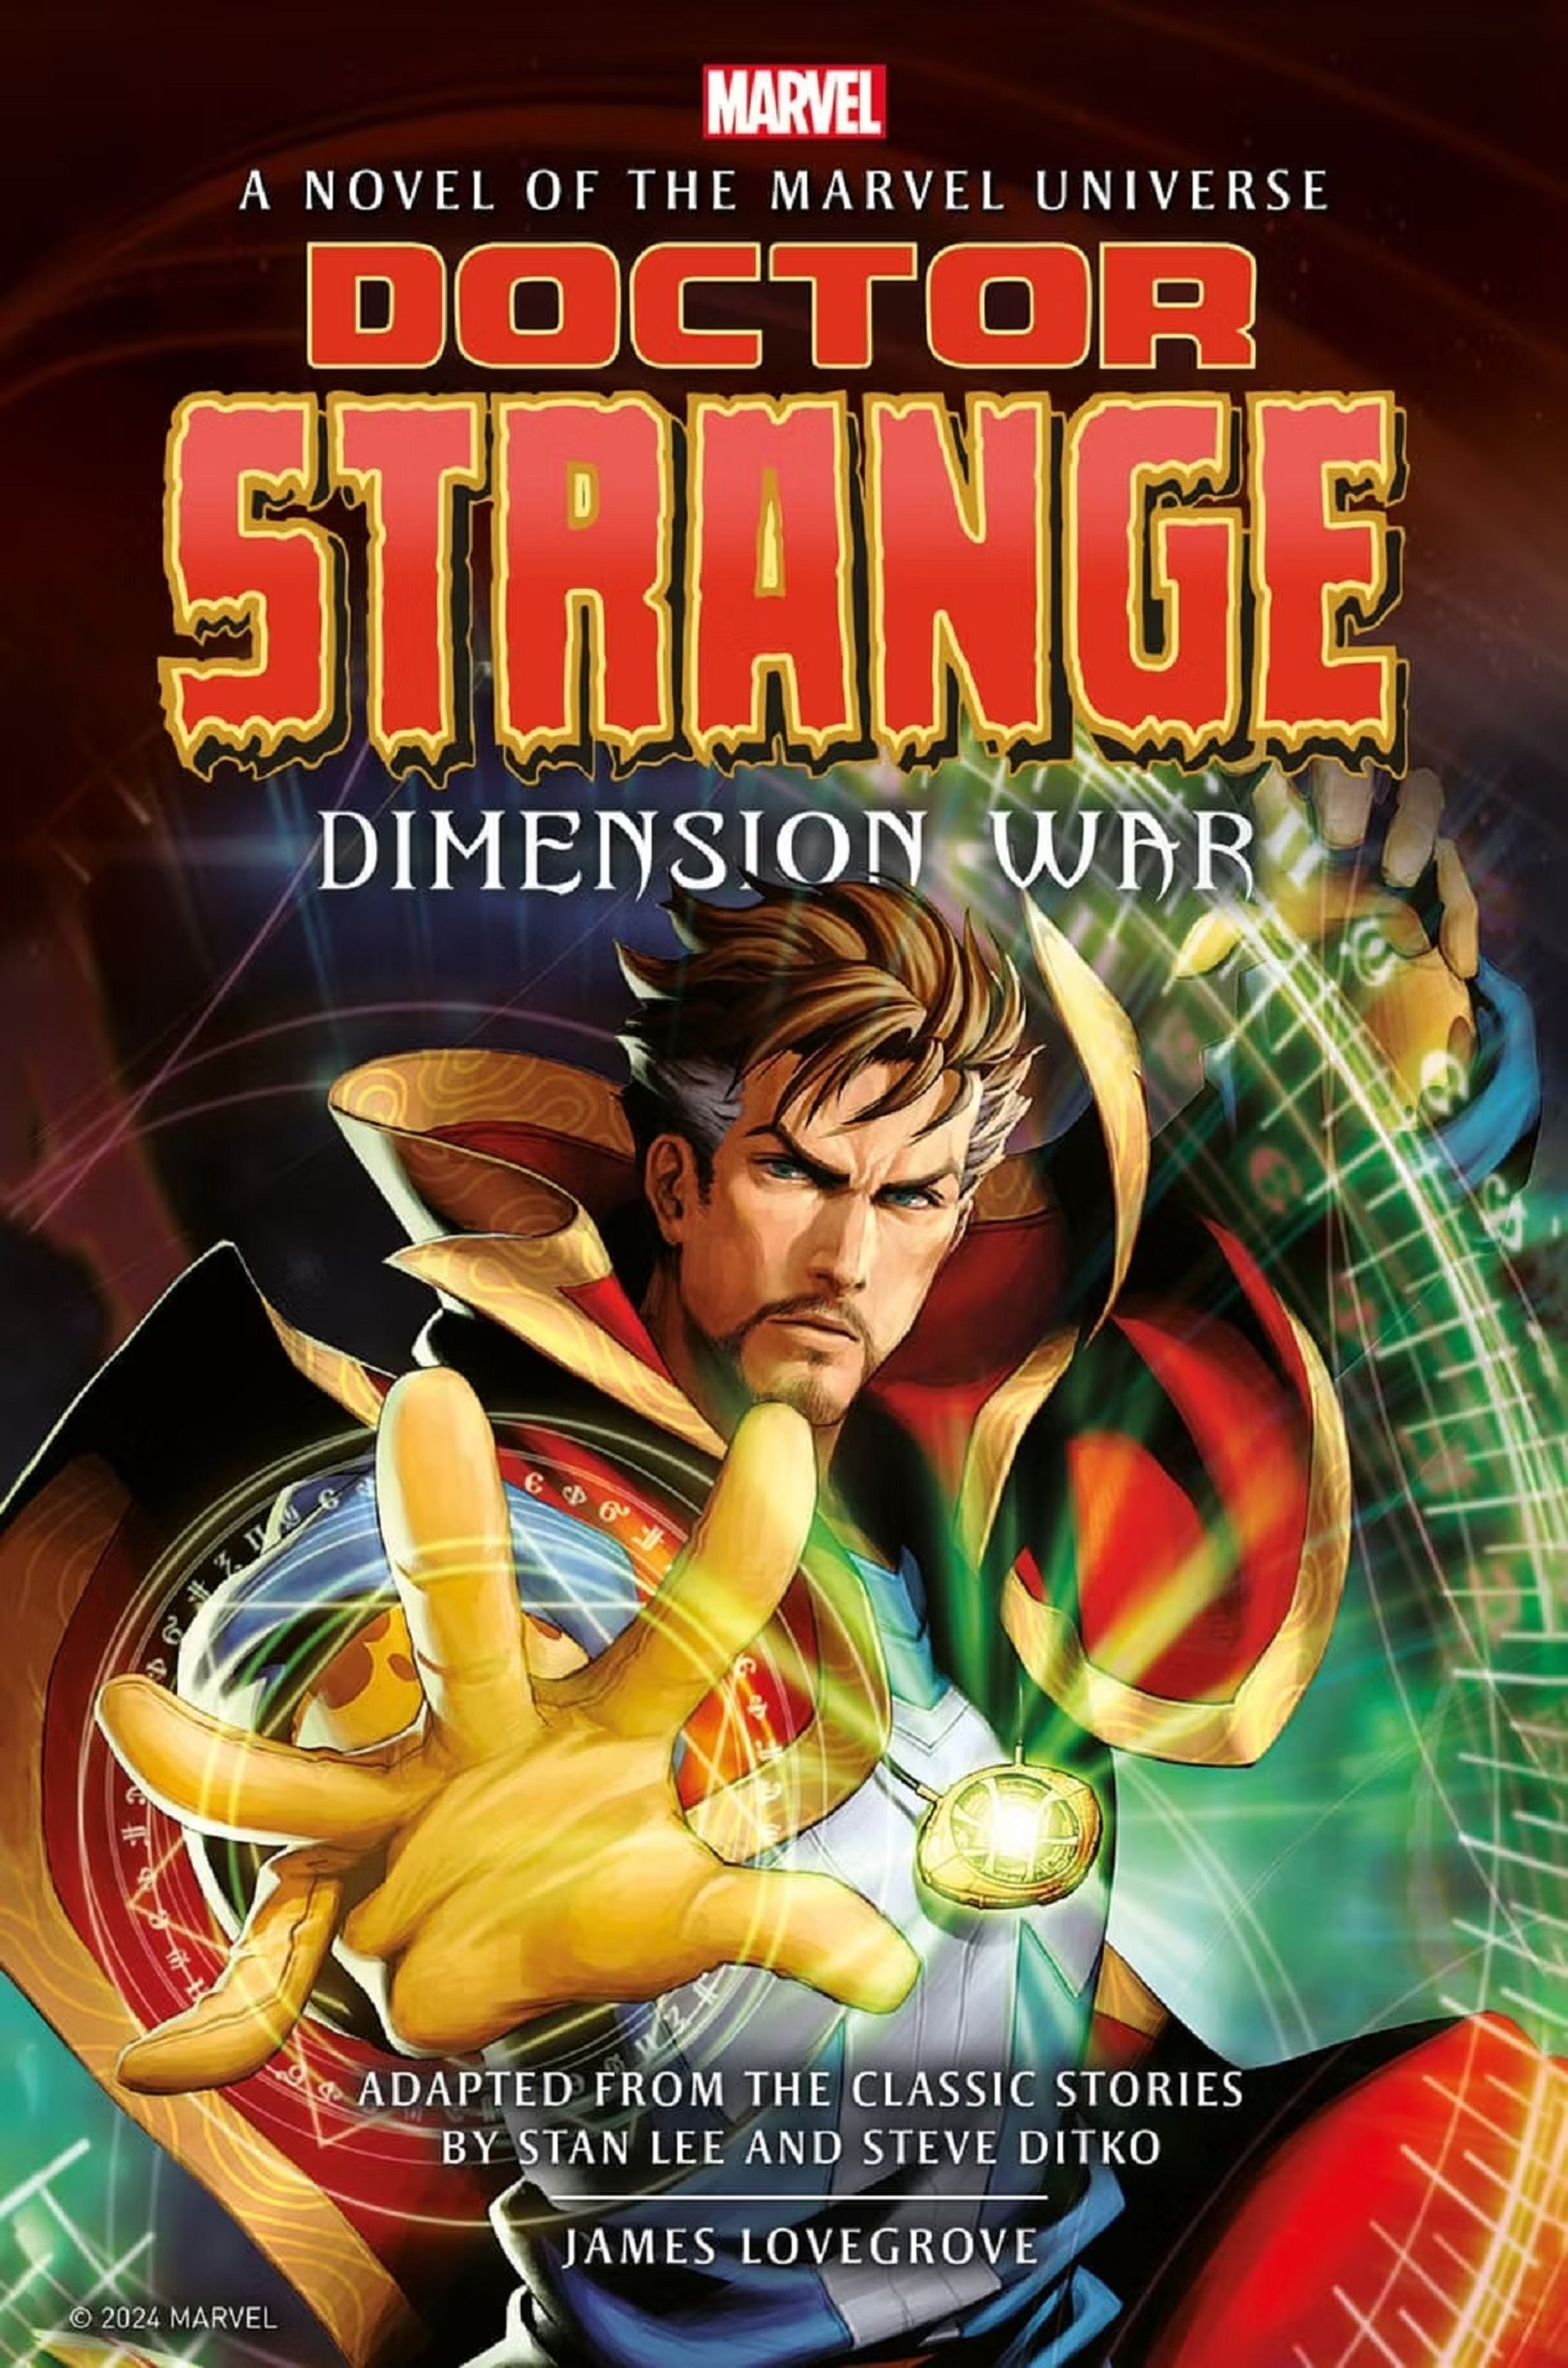 La novela de Doctor Strange: Dimension War